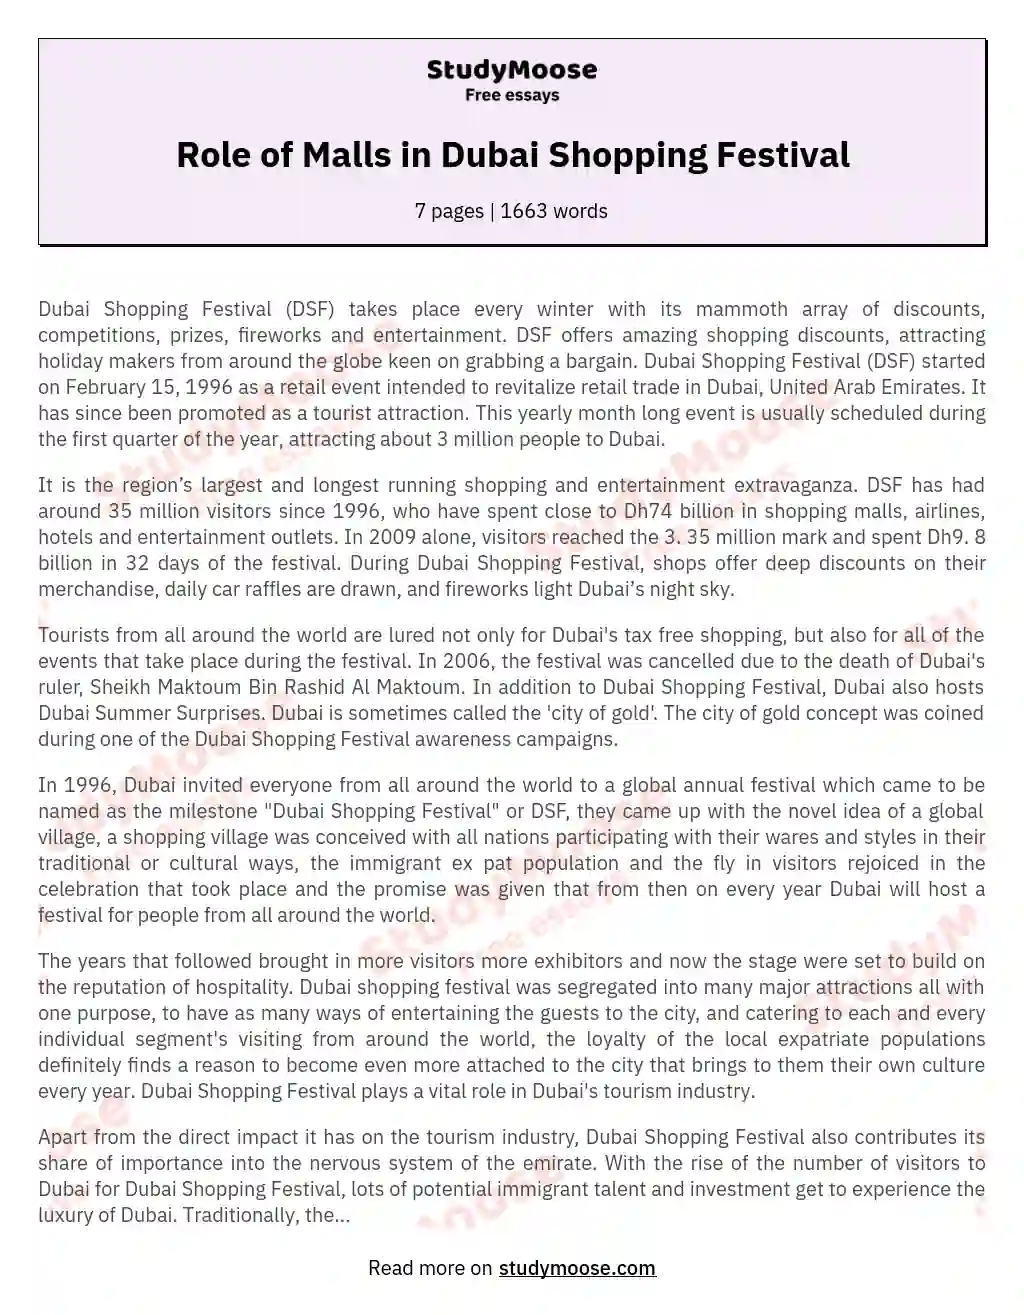 Role of Malls in Dubai Shopping Festival essay